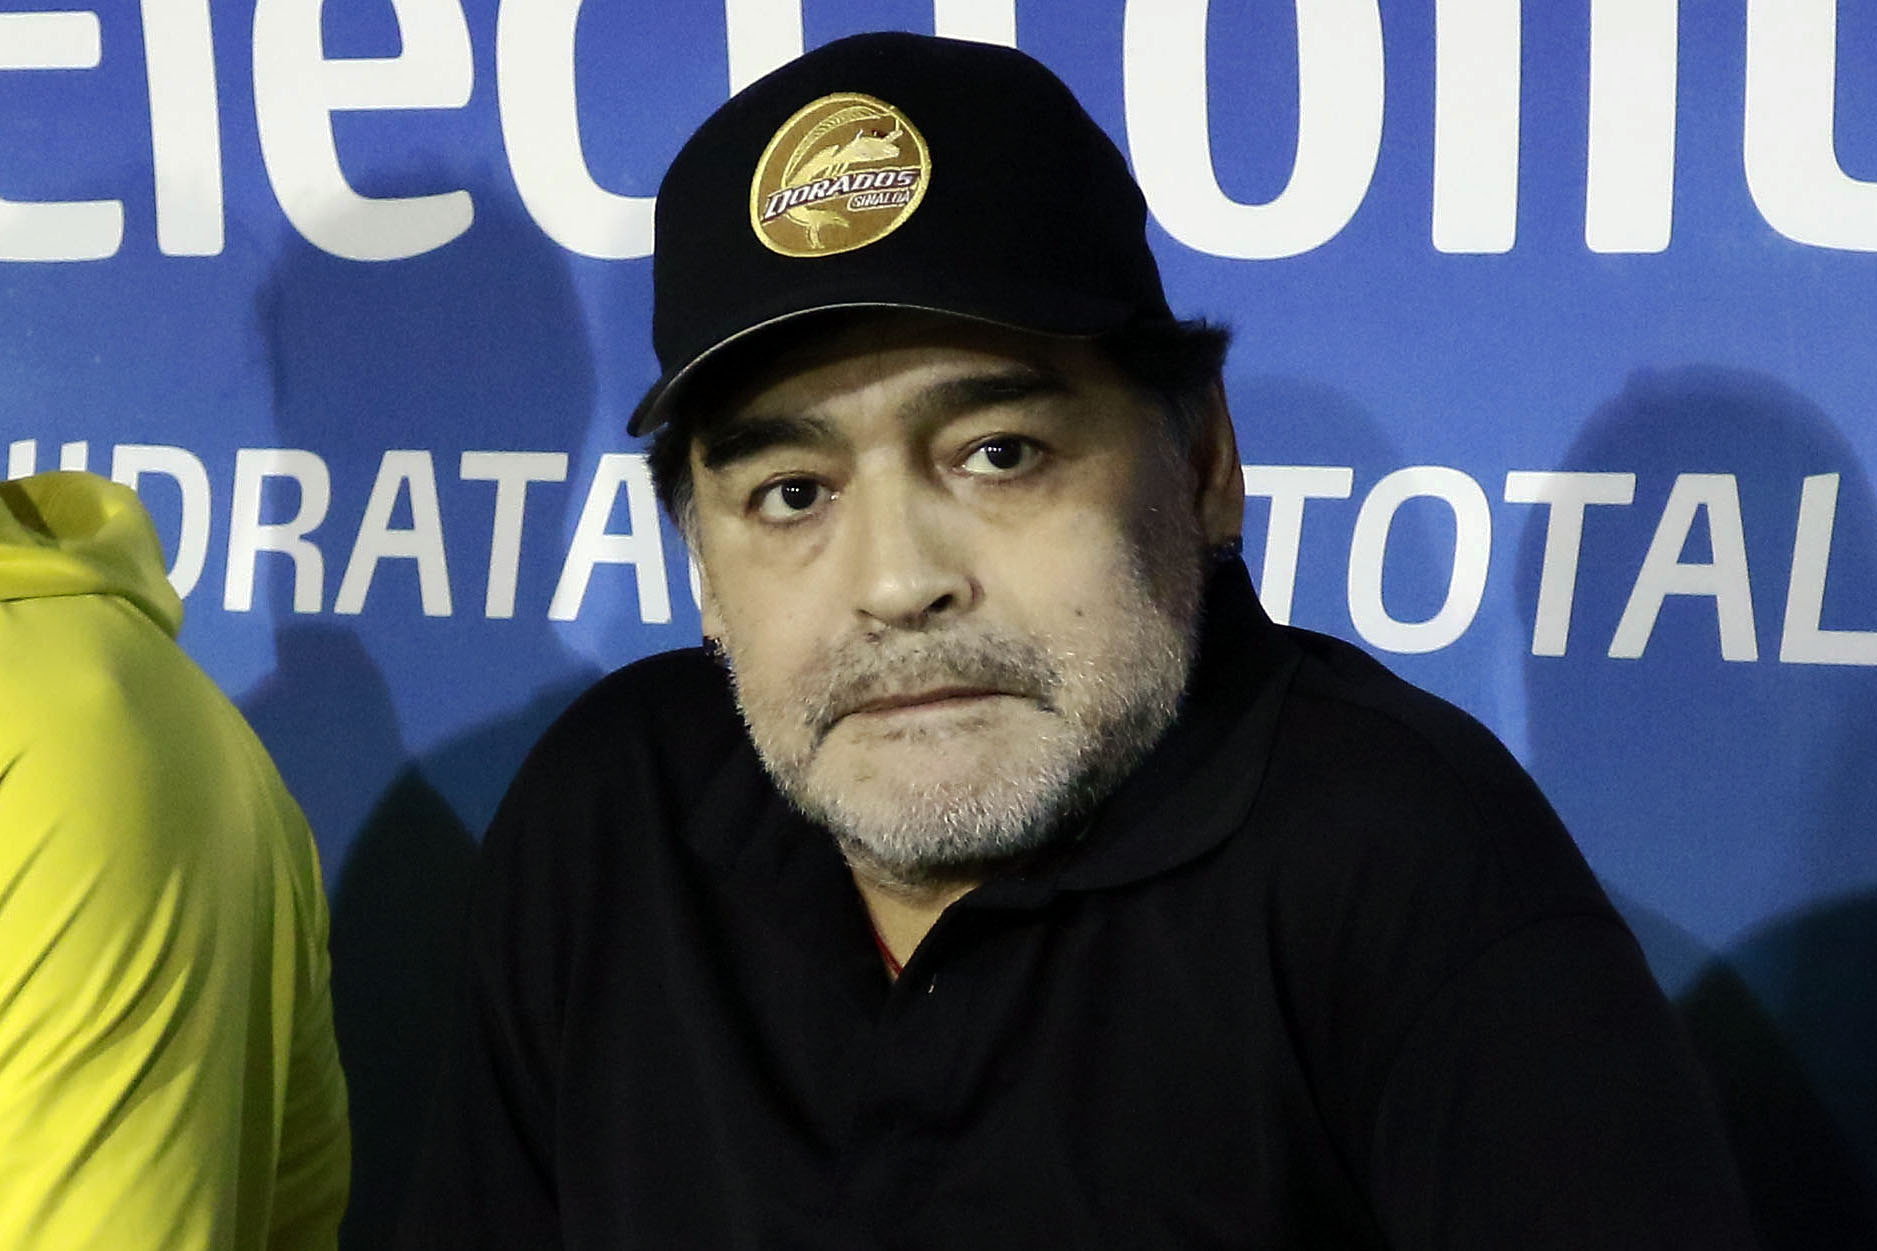 Maradona multado por dedicar triunfo a Nicolás Maduro